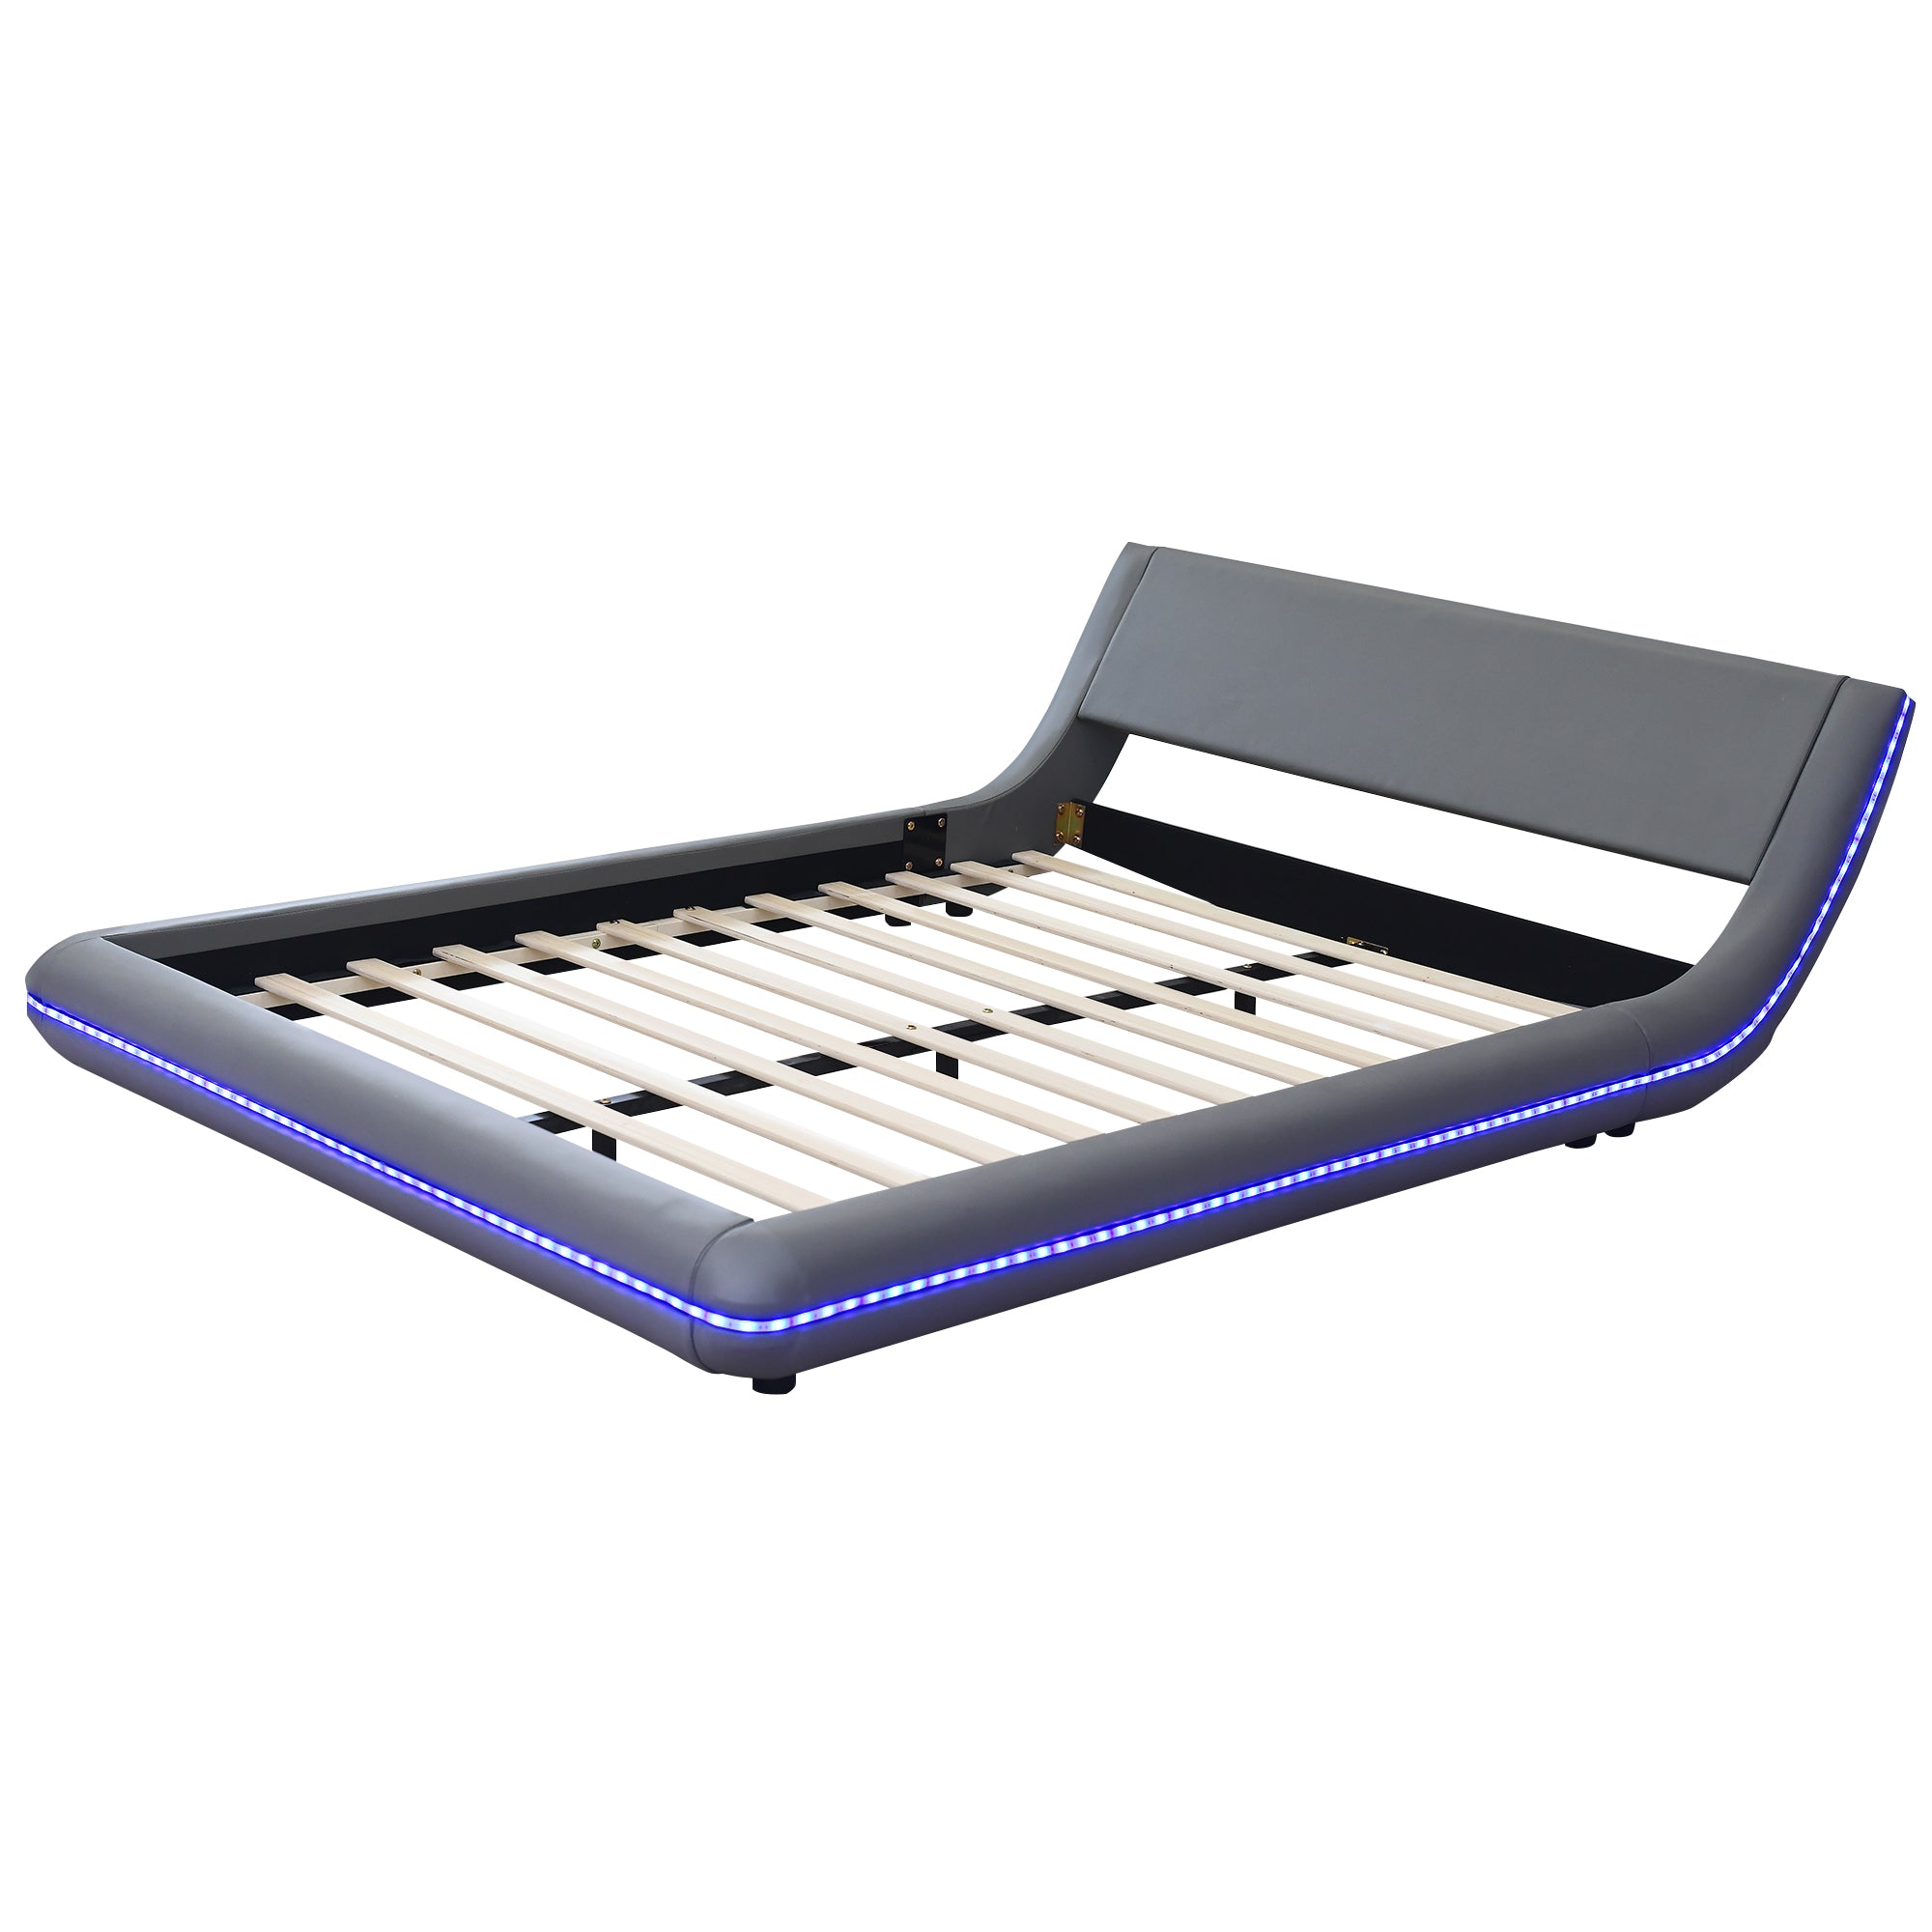 Bellemave® Upholstery Platform Bed with Sloped Headboard Bellemave®